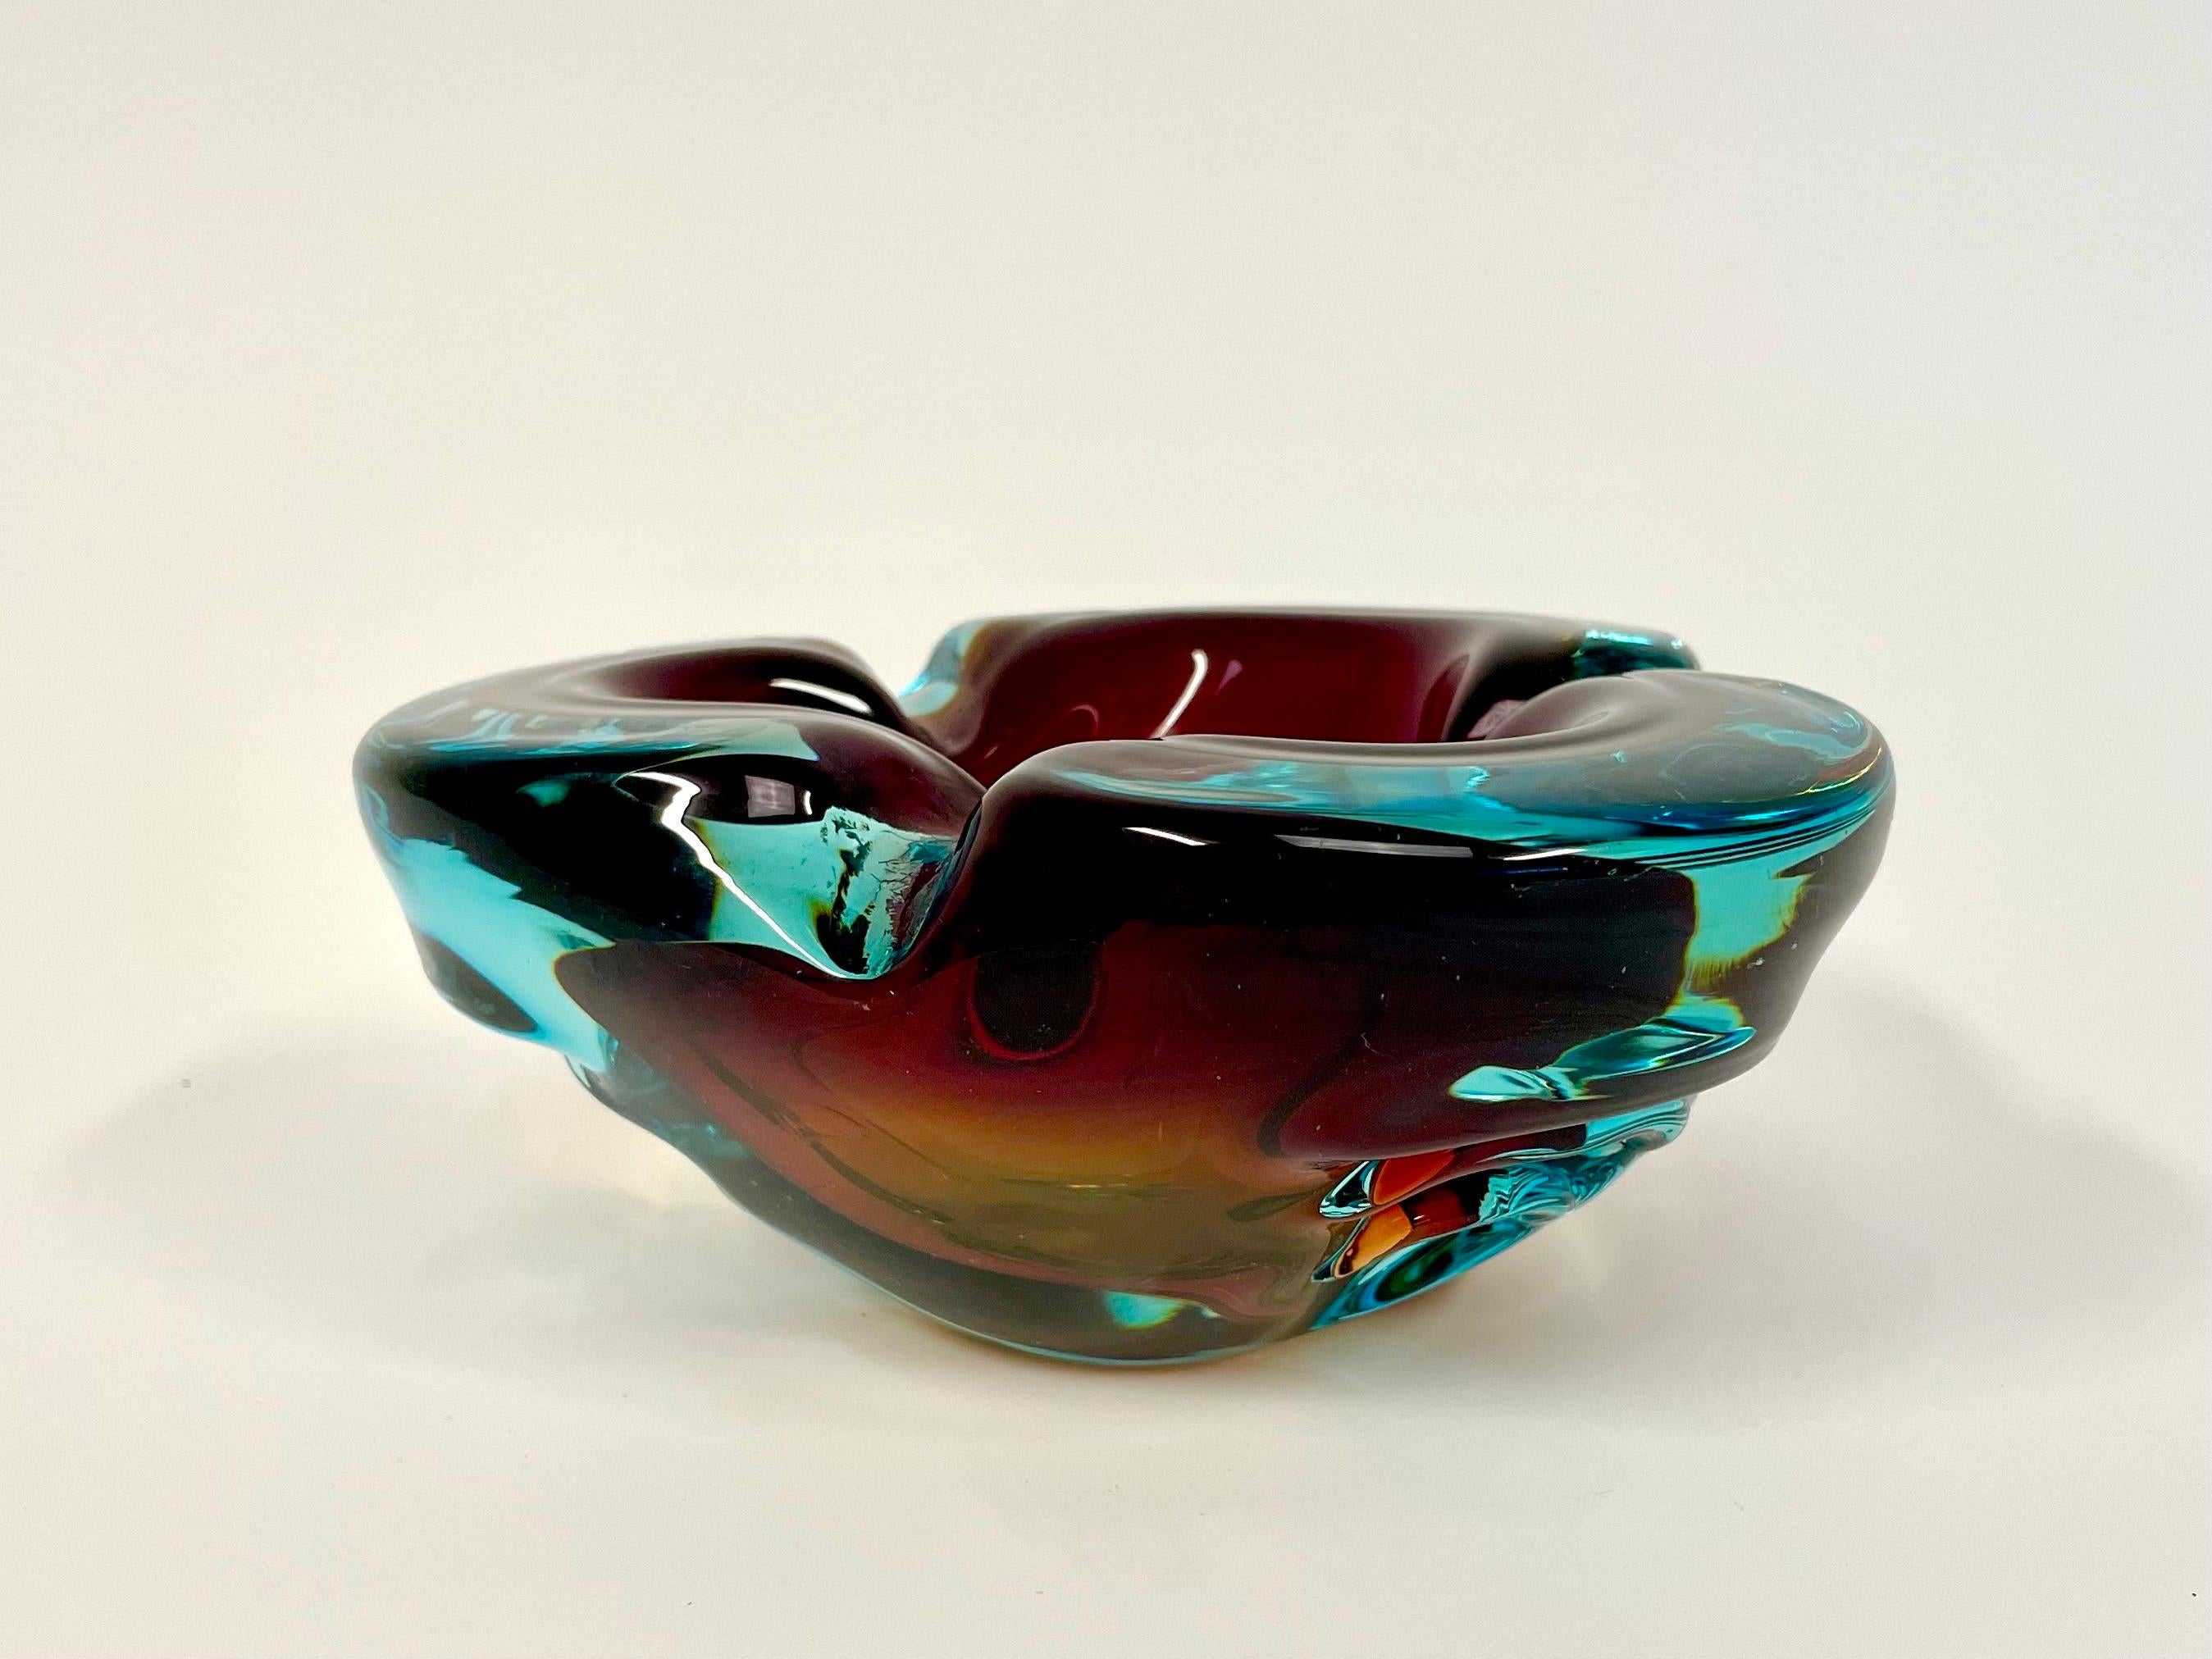 Dies ist der schwere, weich geformte Alfredo Barbini Aschenbecher aus Kunstglas. Er kommt in einer modrigen Tricolor-Variante in mediterranem Blau mit burgunderfarbenen Elementen und bernsteinfarbenem Boden. 

Er hat ein dreieckiges Design mit